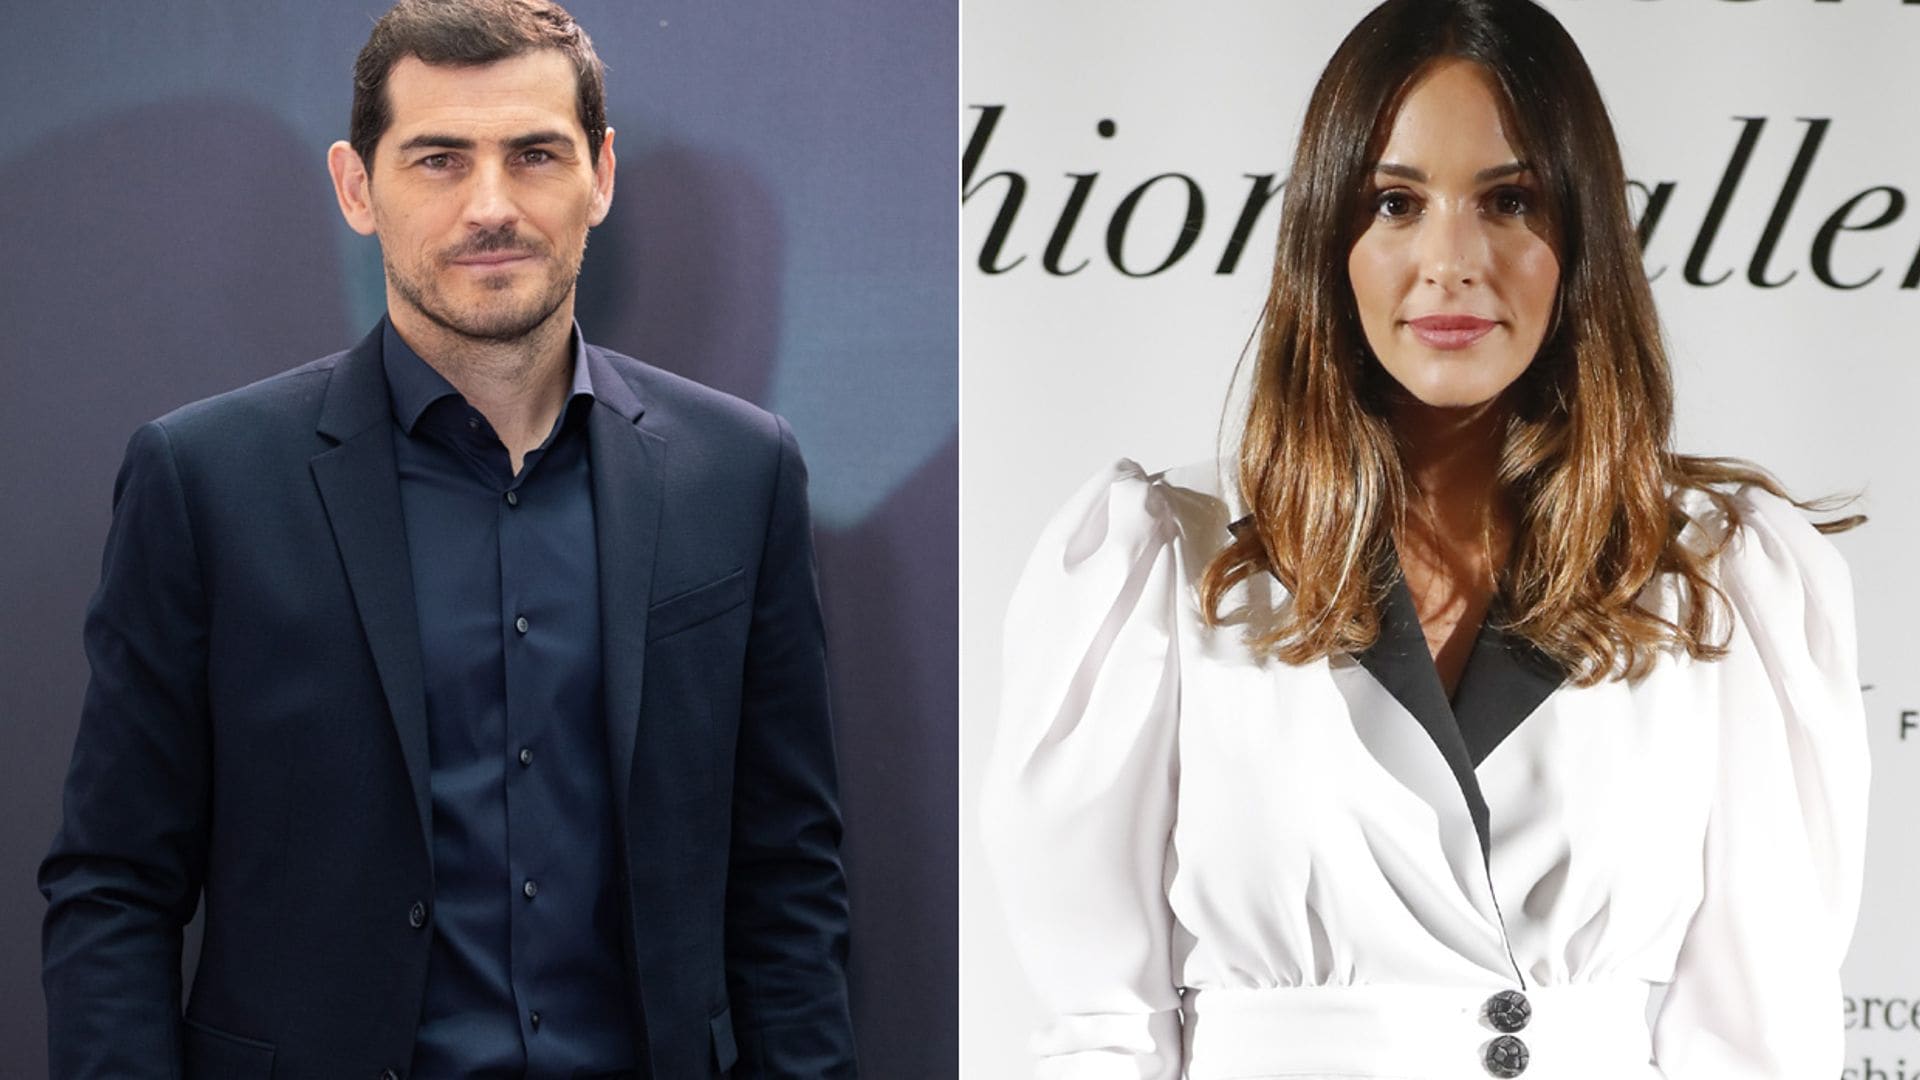 La reacción de Iker Casillas tras ser relacionado con la 'influencer' Rocío Osorno